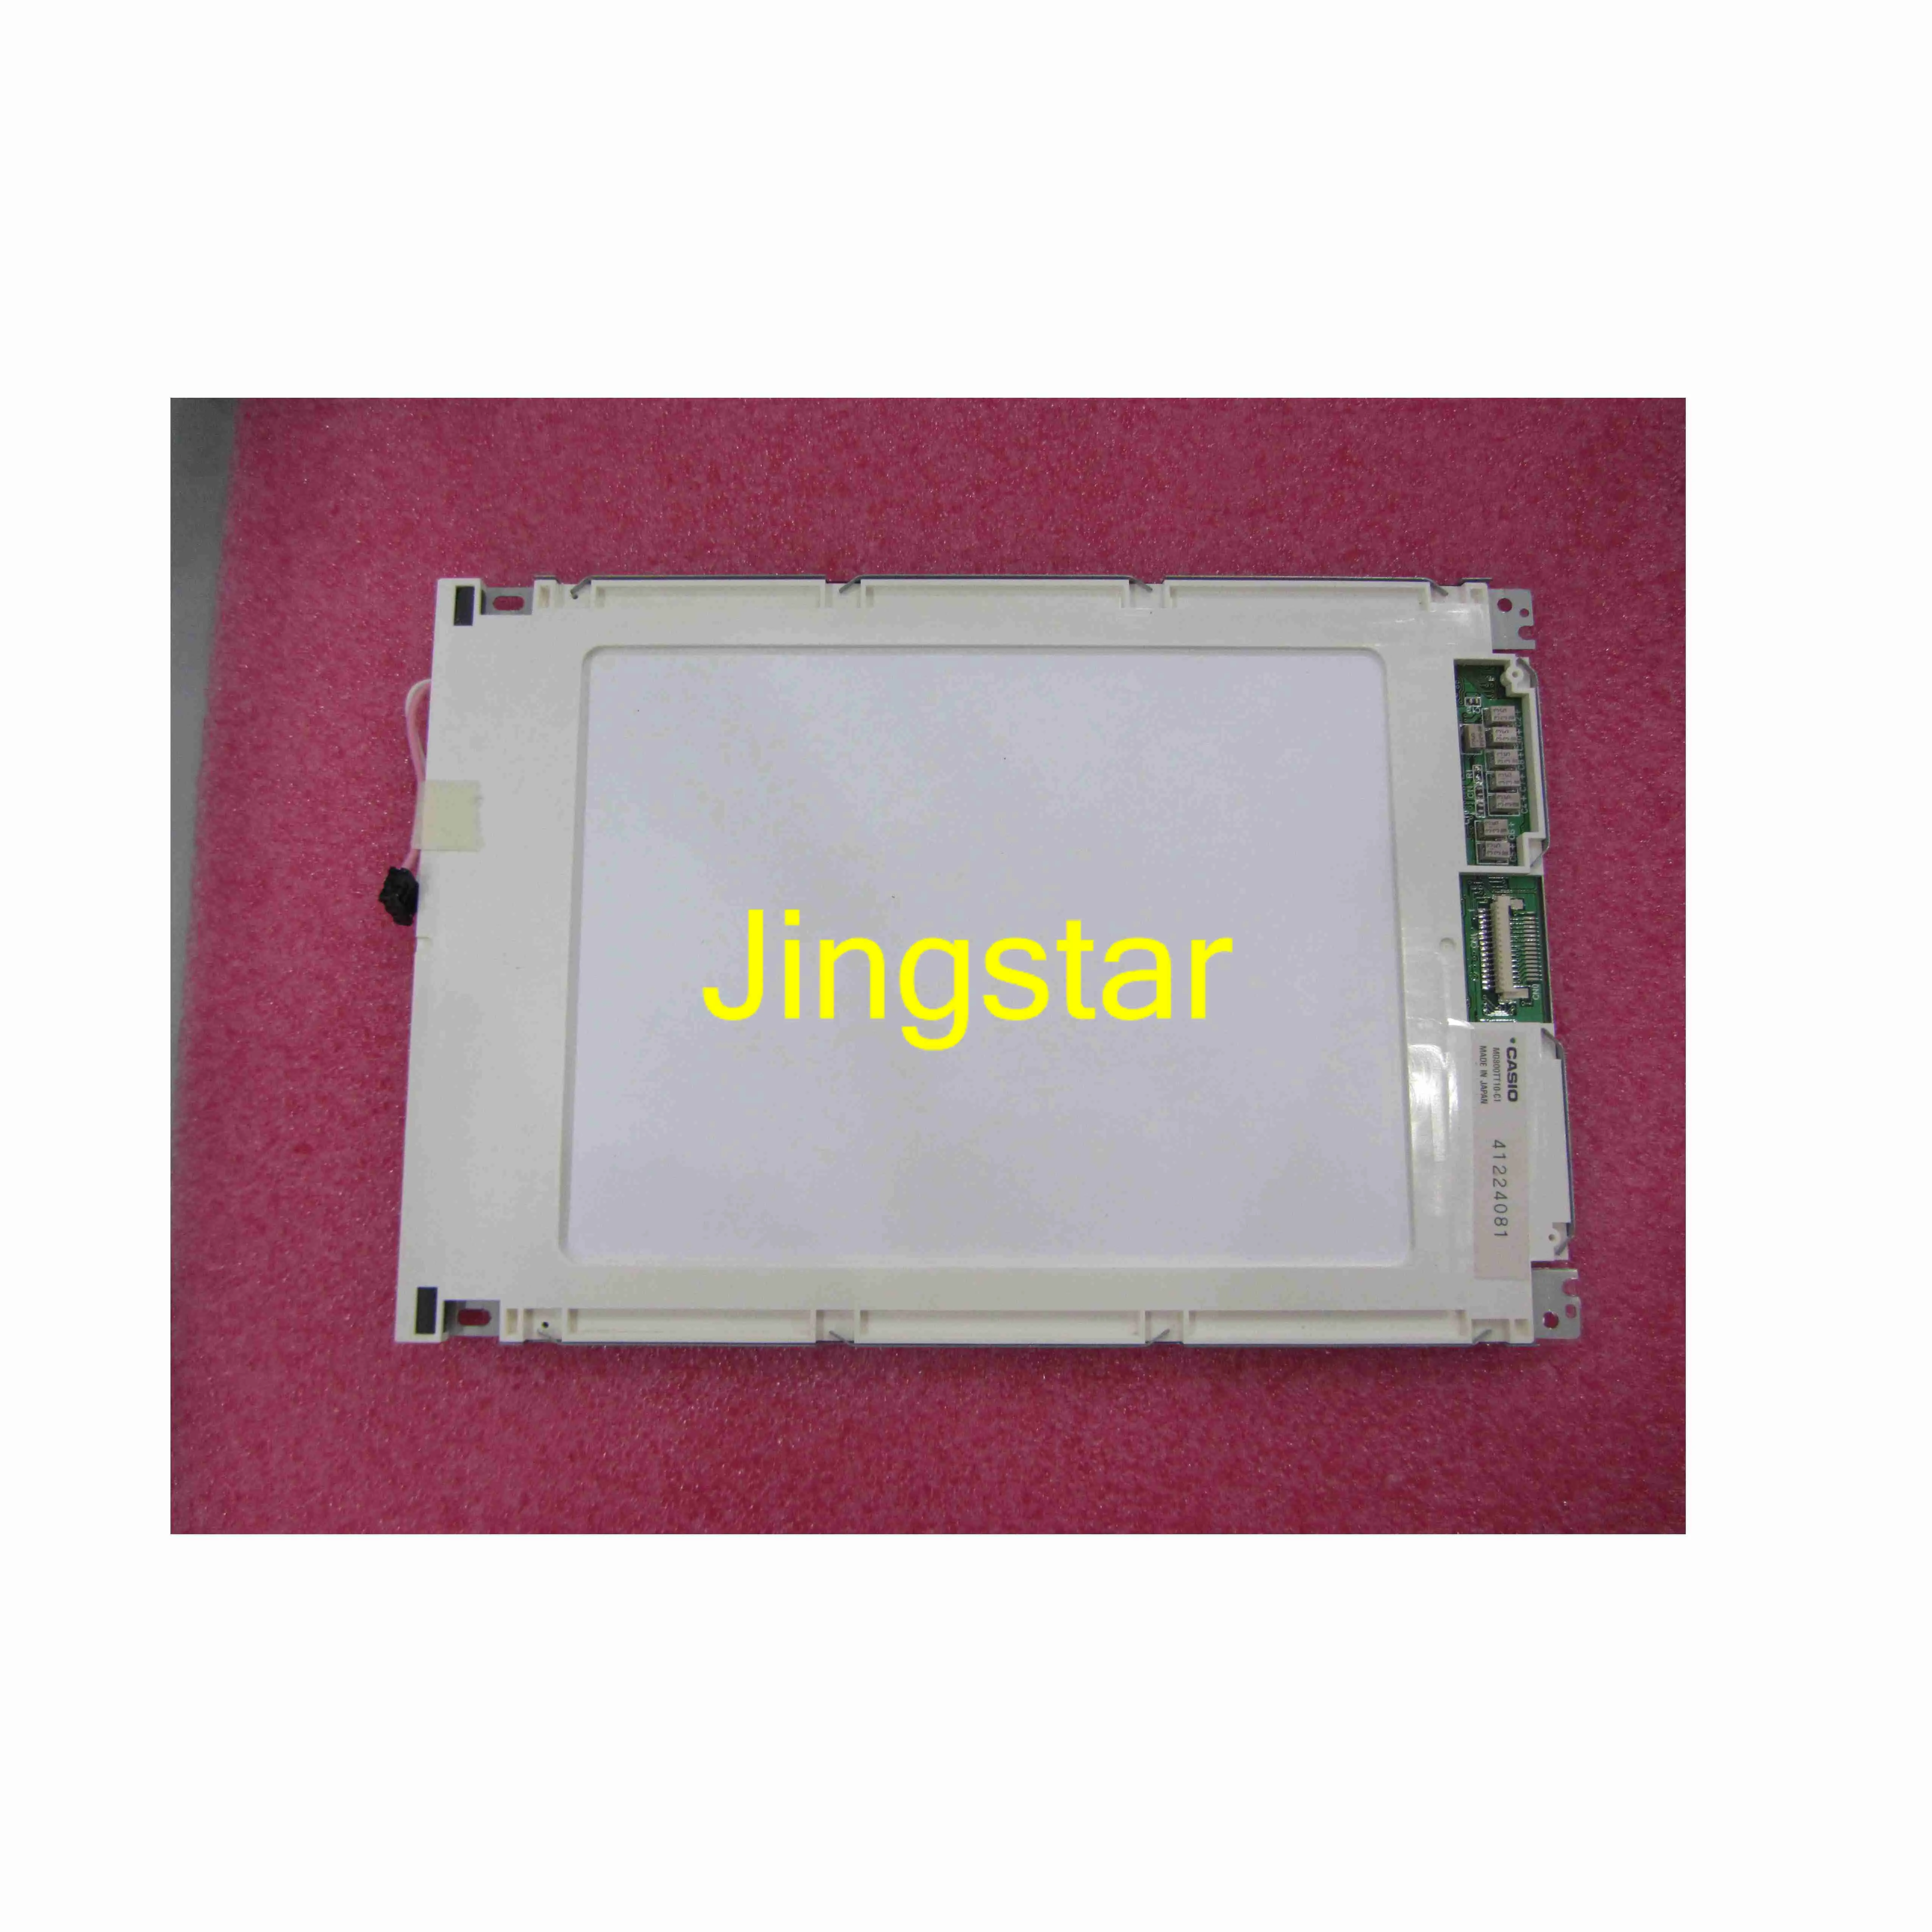 Vendita di moduli LCD industriali professionali M0800TT10-C1 con ok testato e garanzia